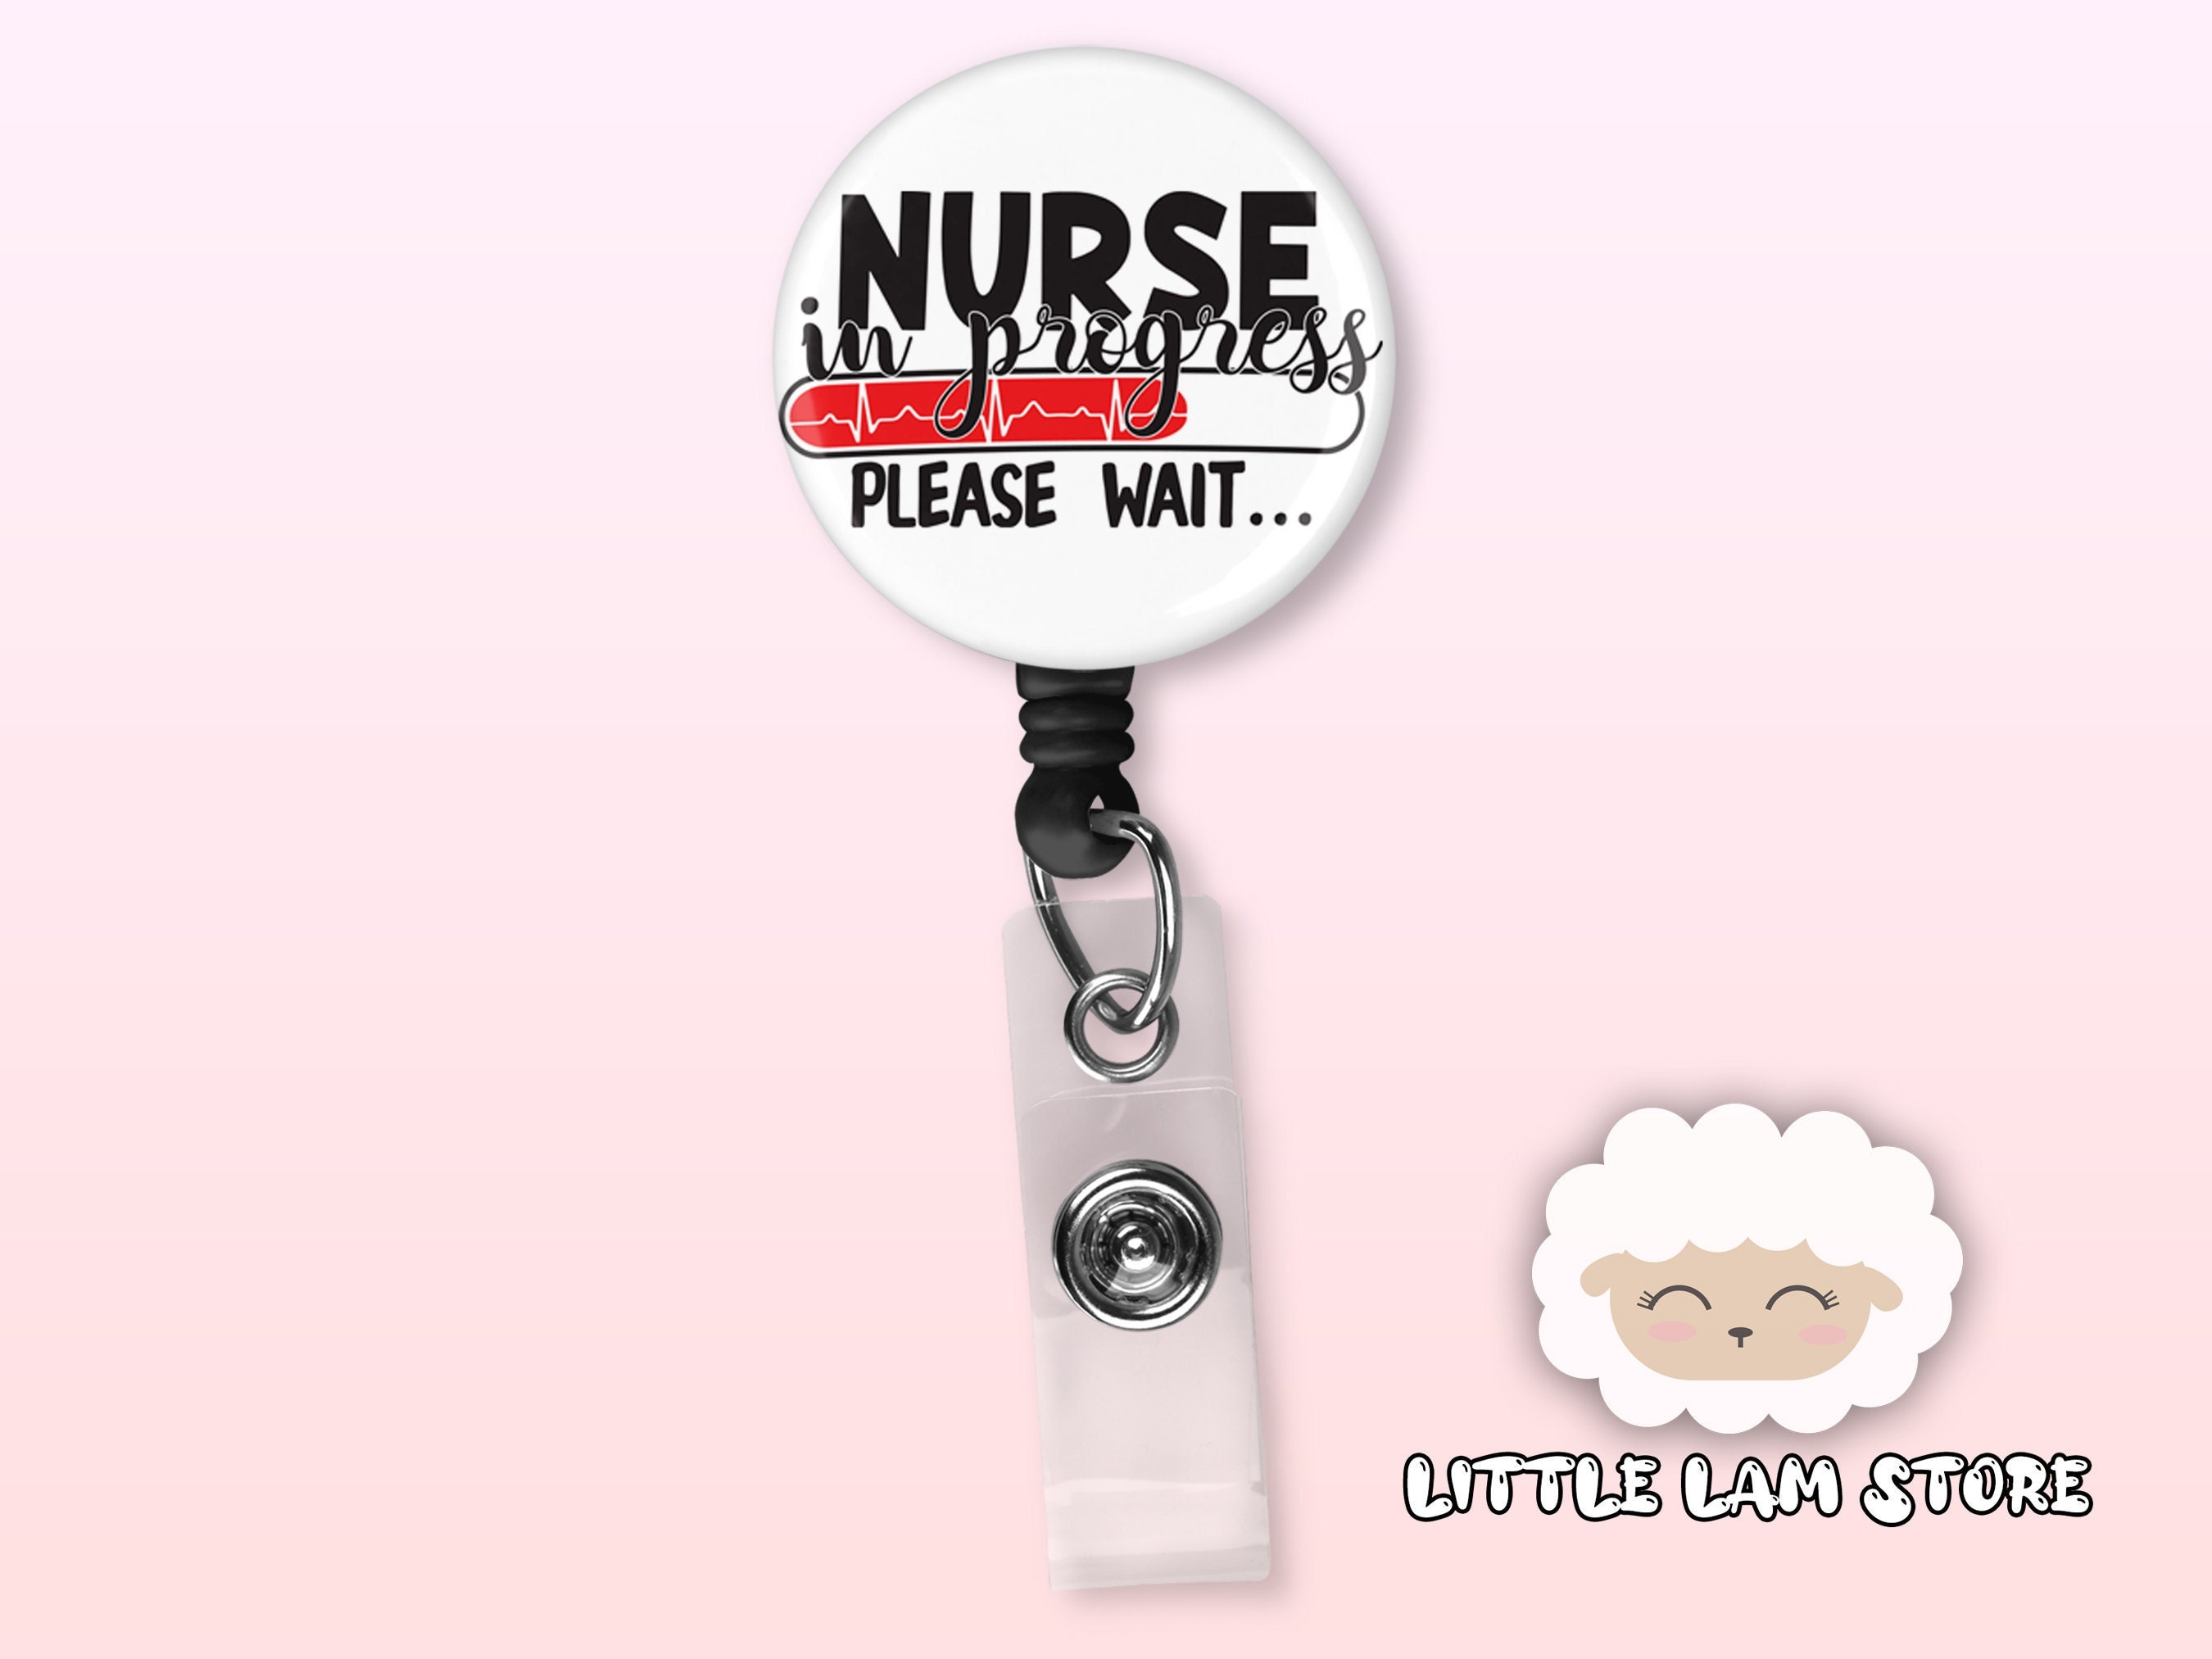 Nurse Badge Reel Nurse in Progress Please Wait Retractable Badge